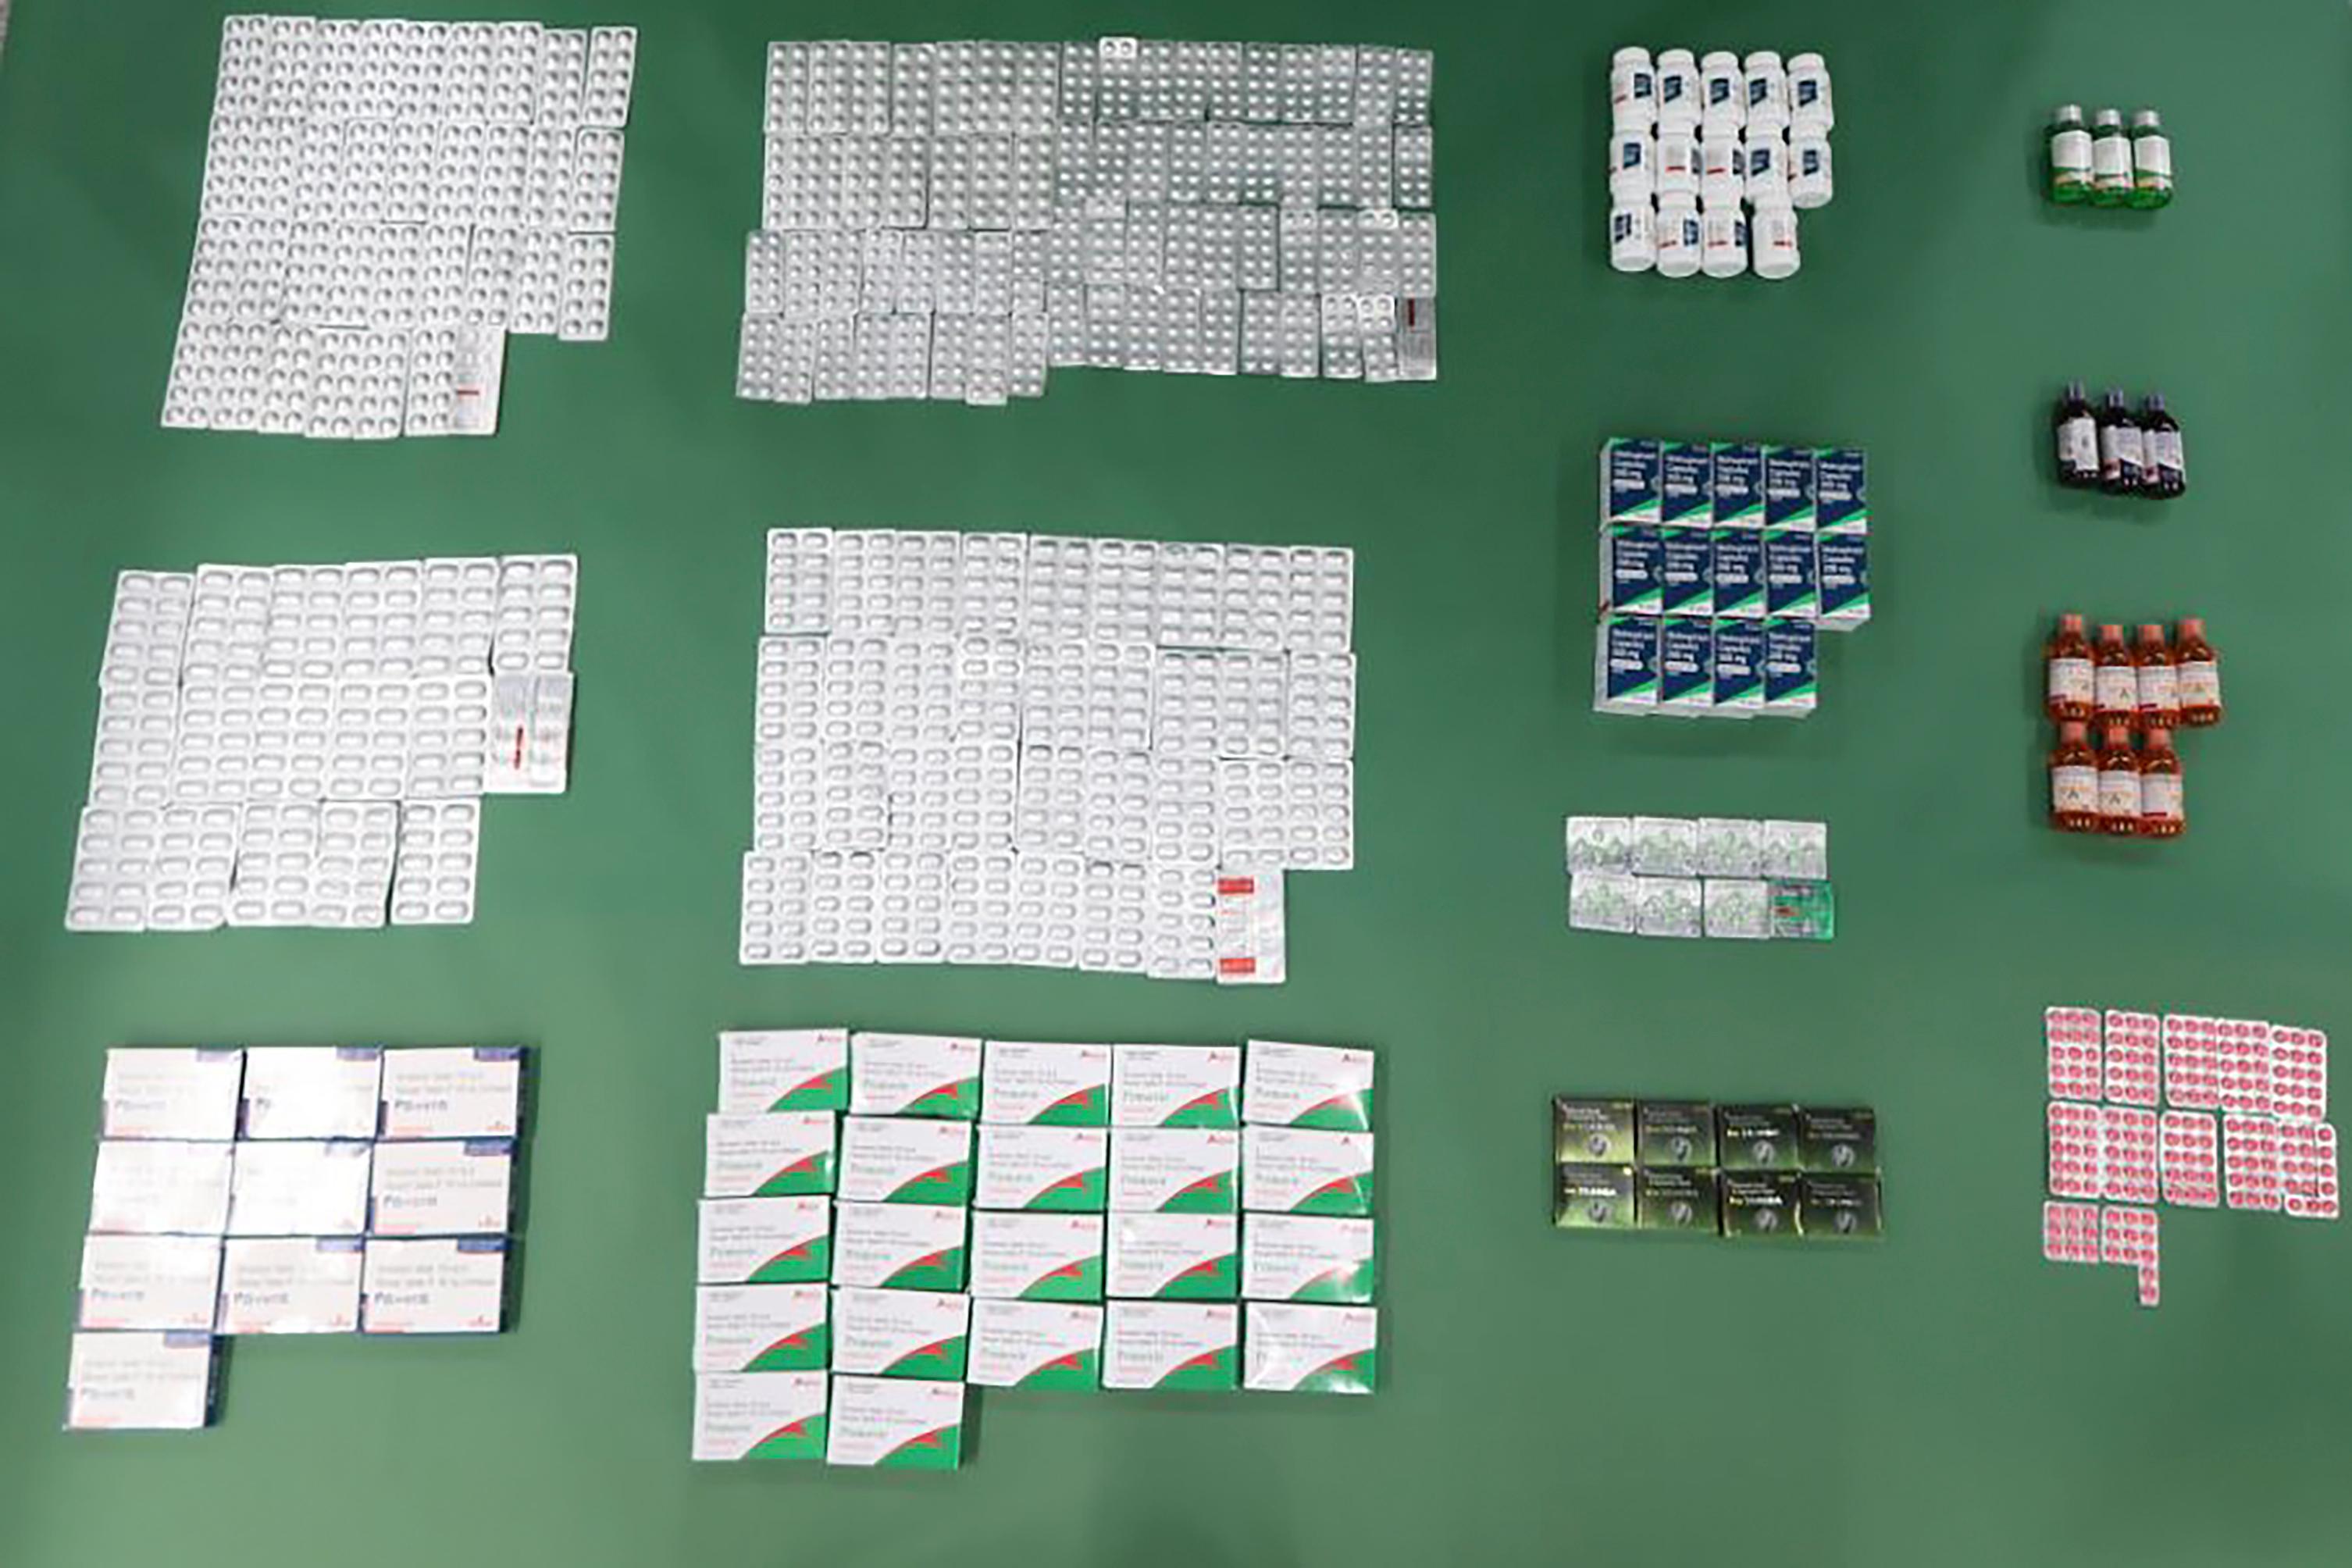 香港海關過去兩日（一月七日和八日）在香港國際機場偵破三宗懷疑走私藥物案件，檢獲約一萬一千粒和約一千毫升懷疑受管制藥物，估計市值共約六十萬元。圖示海關人員於第一宗案件中檢獲的懷疑受管制藥物。

